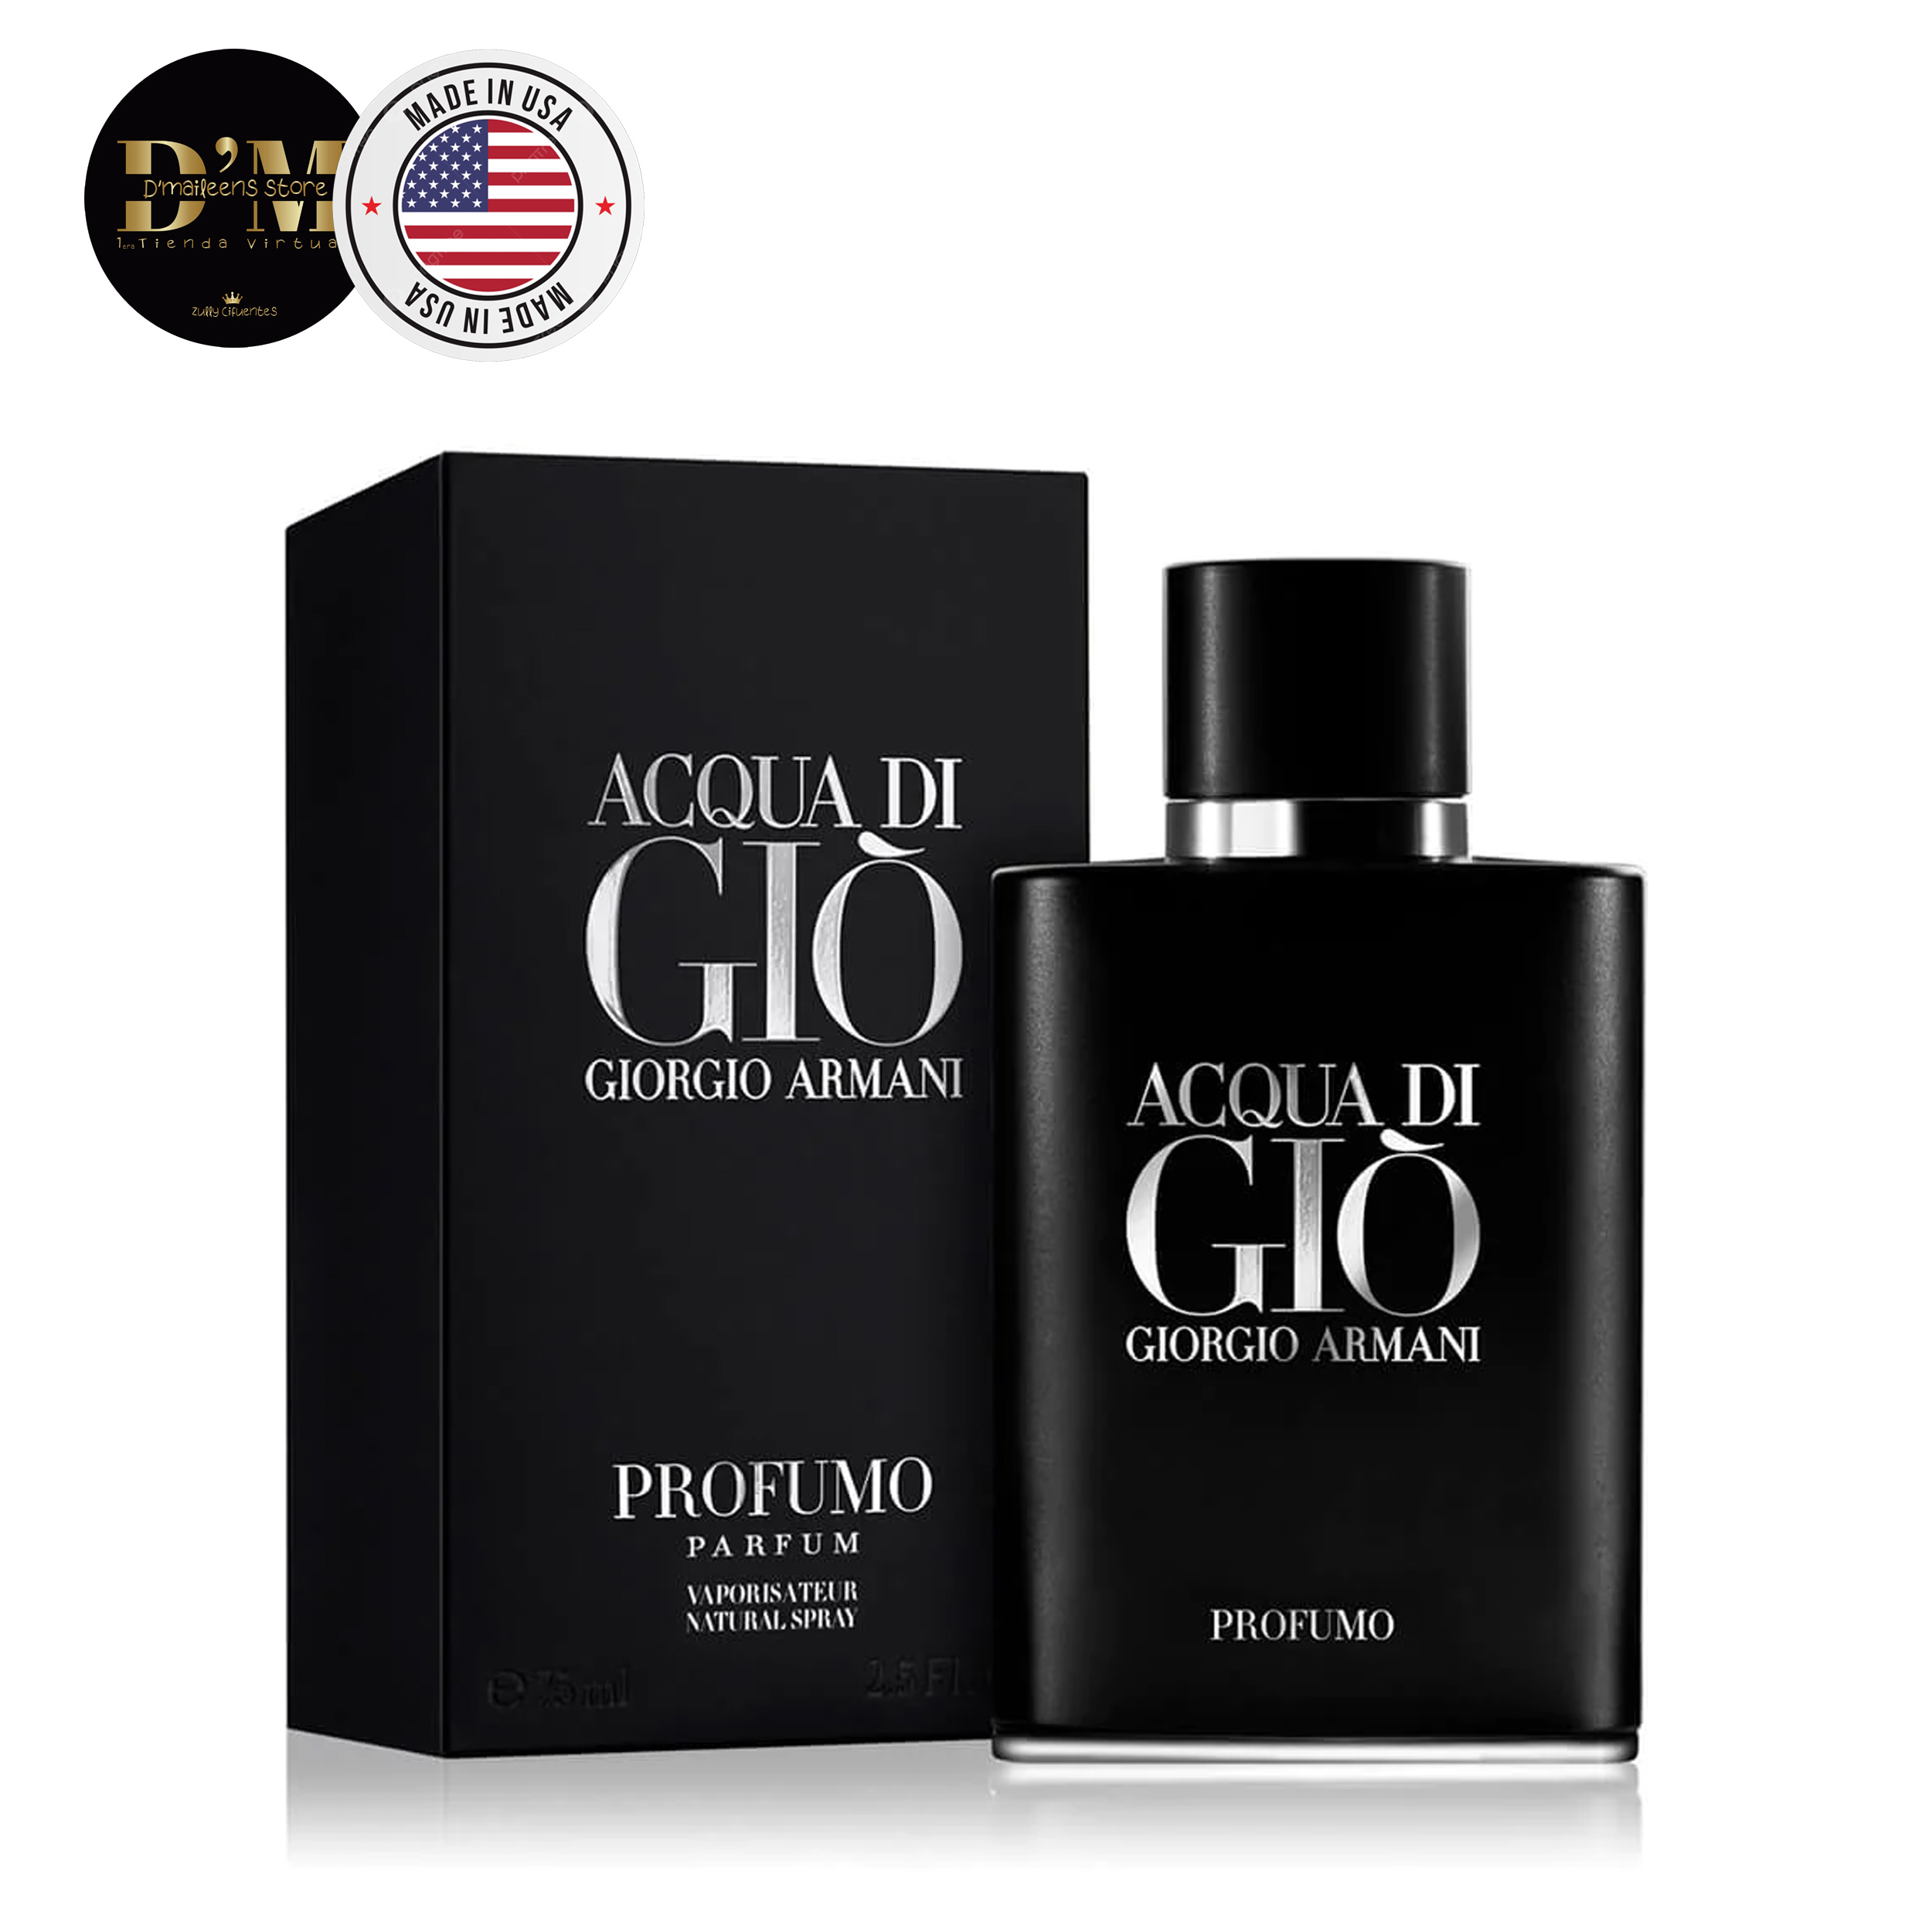 Perfume Acqua Di Giò Profumo Giorgio Armani (Replica Con Fragancia ...